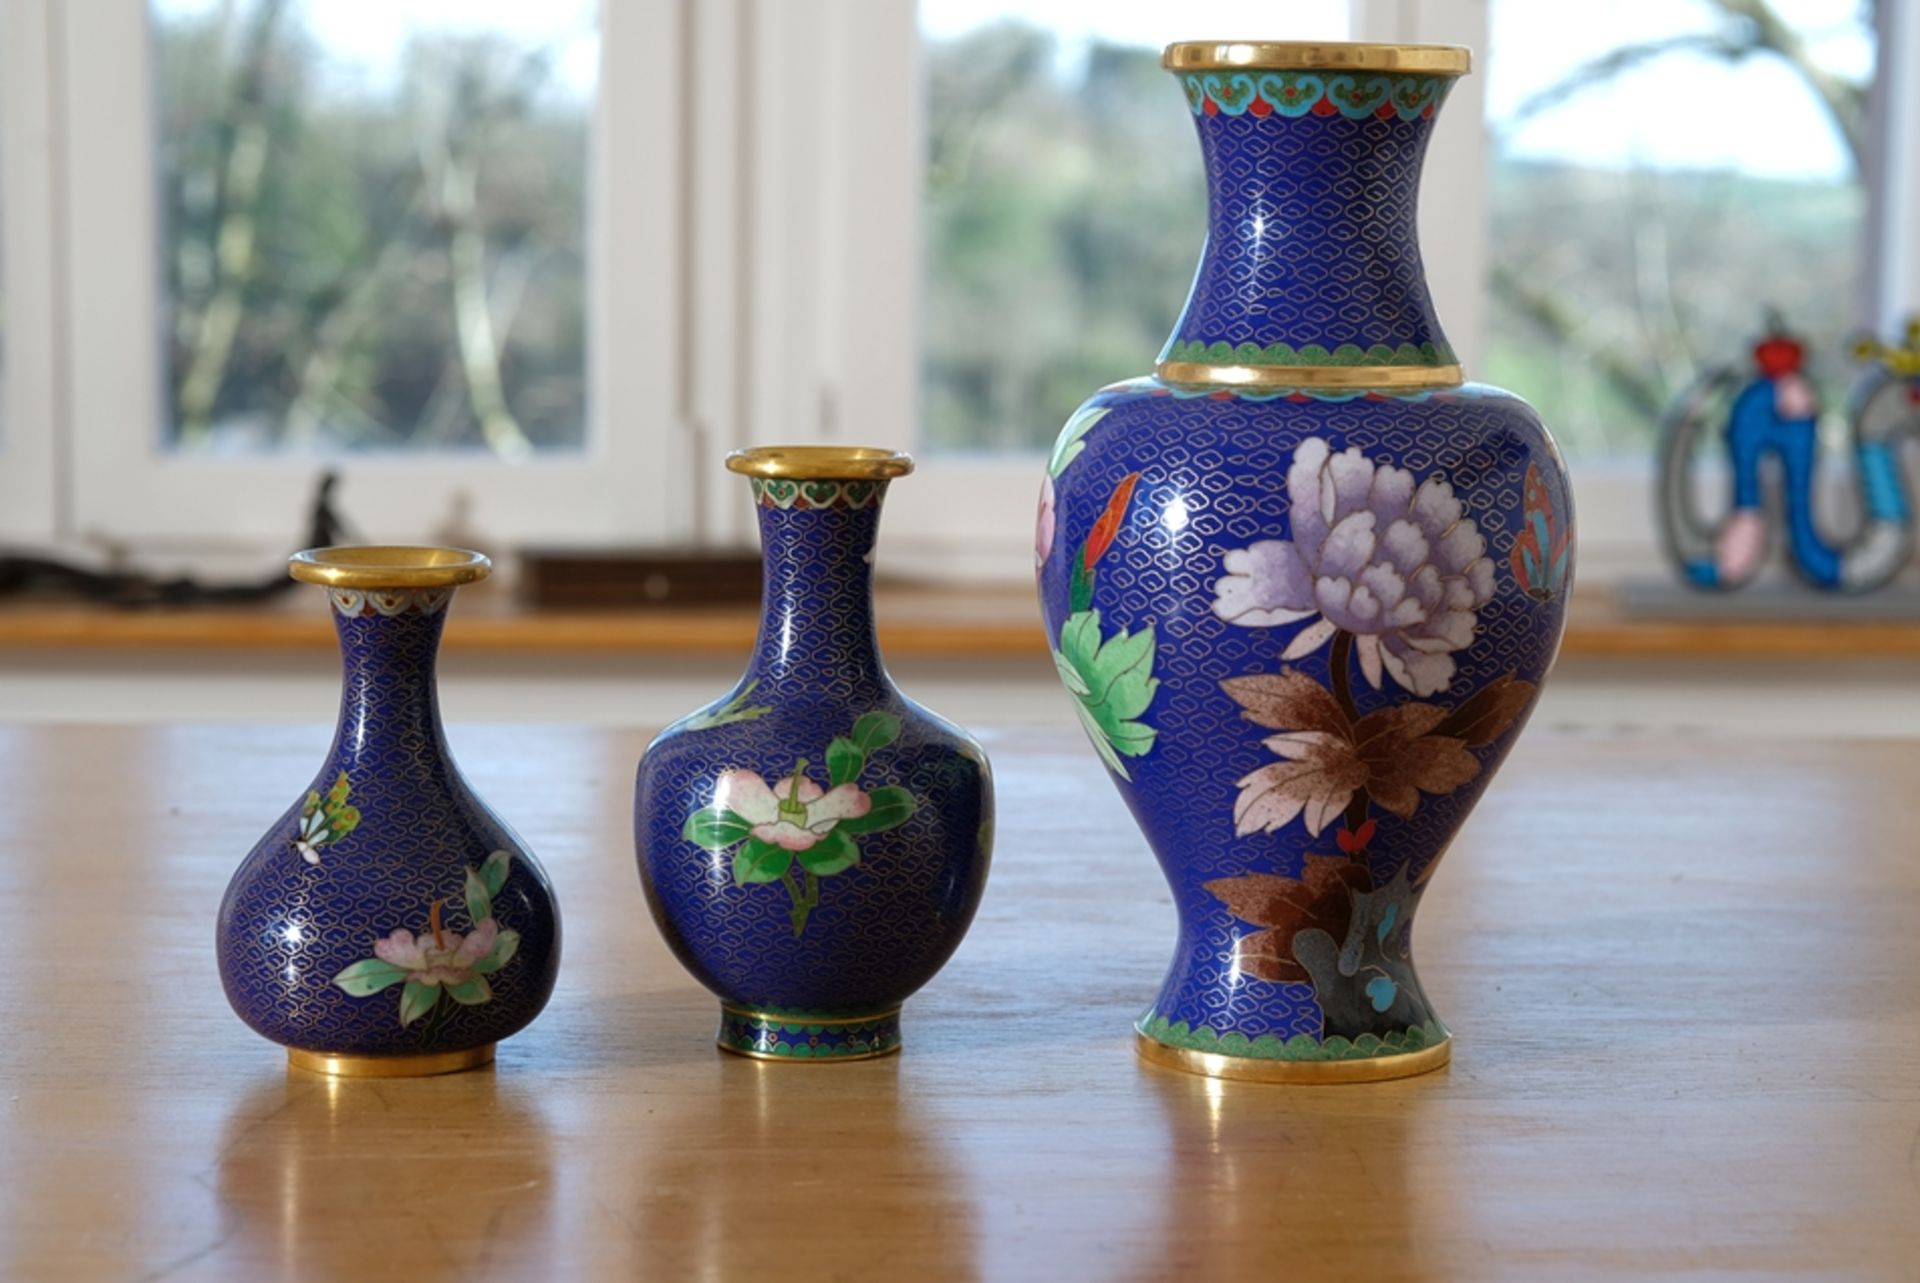 Japanische Cloisonné-Vasen, drei blaue Vasen aus Emaille. Mit floralen Motiven verziert. Inneres ve - Bild 3 aus 3